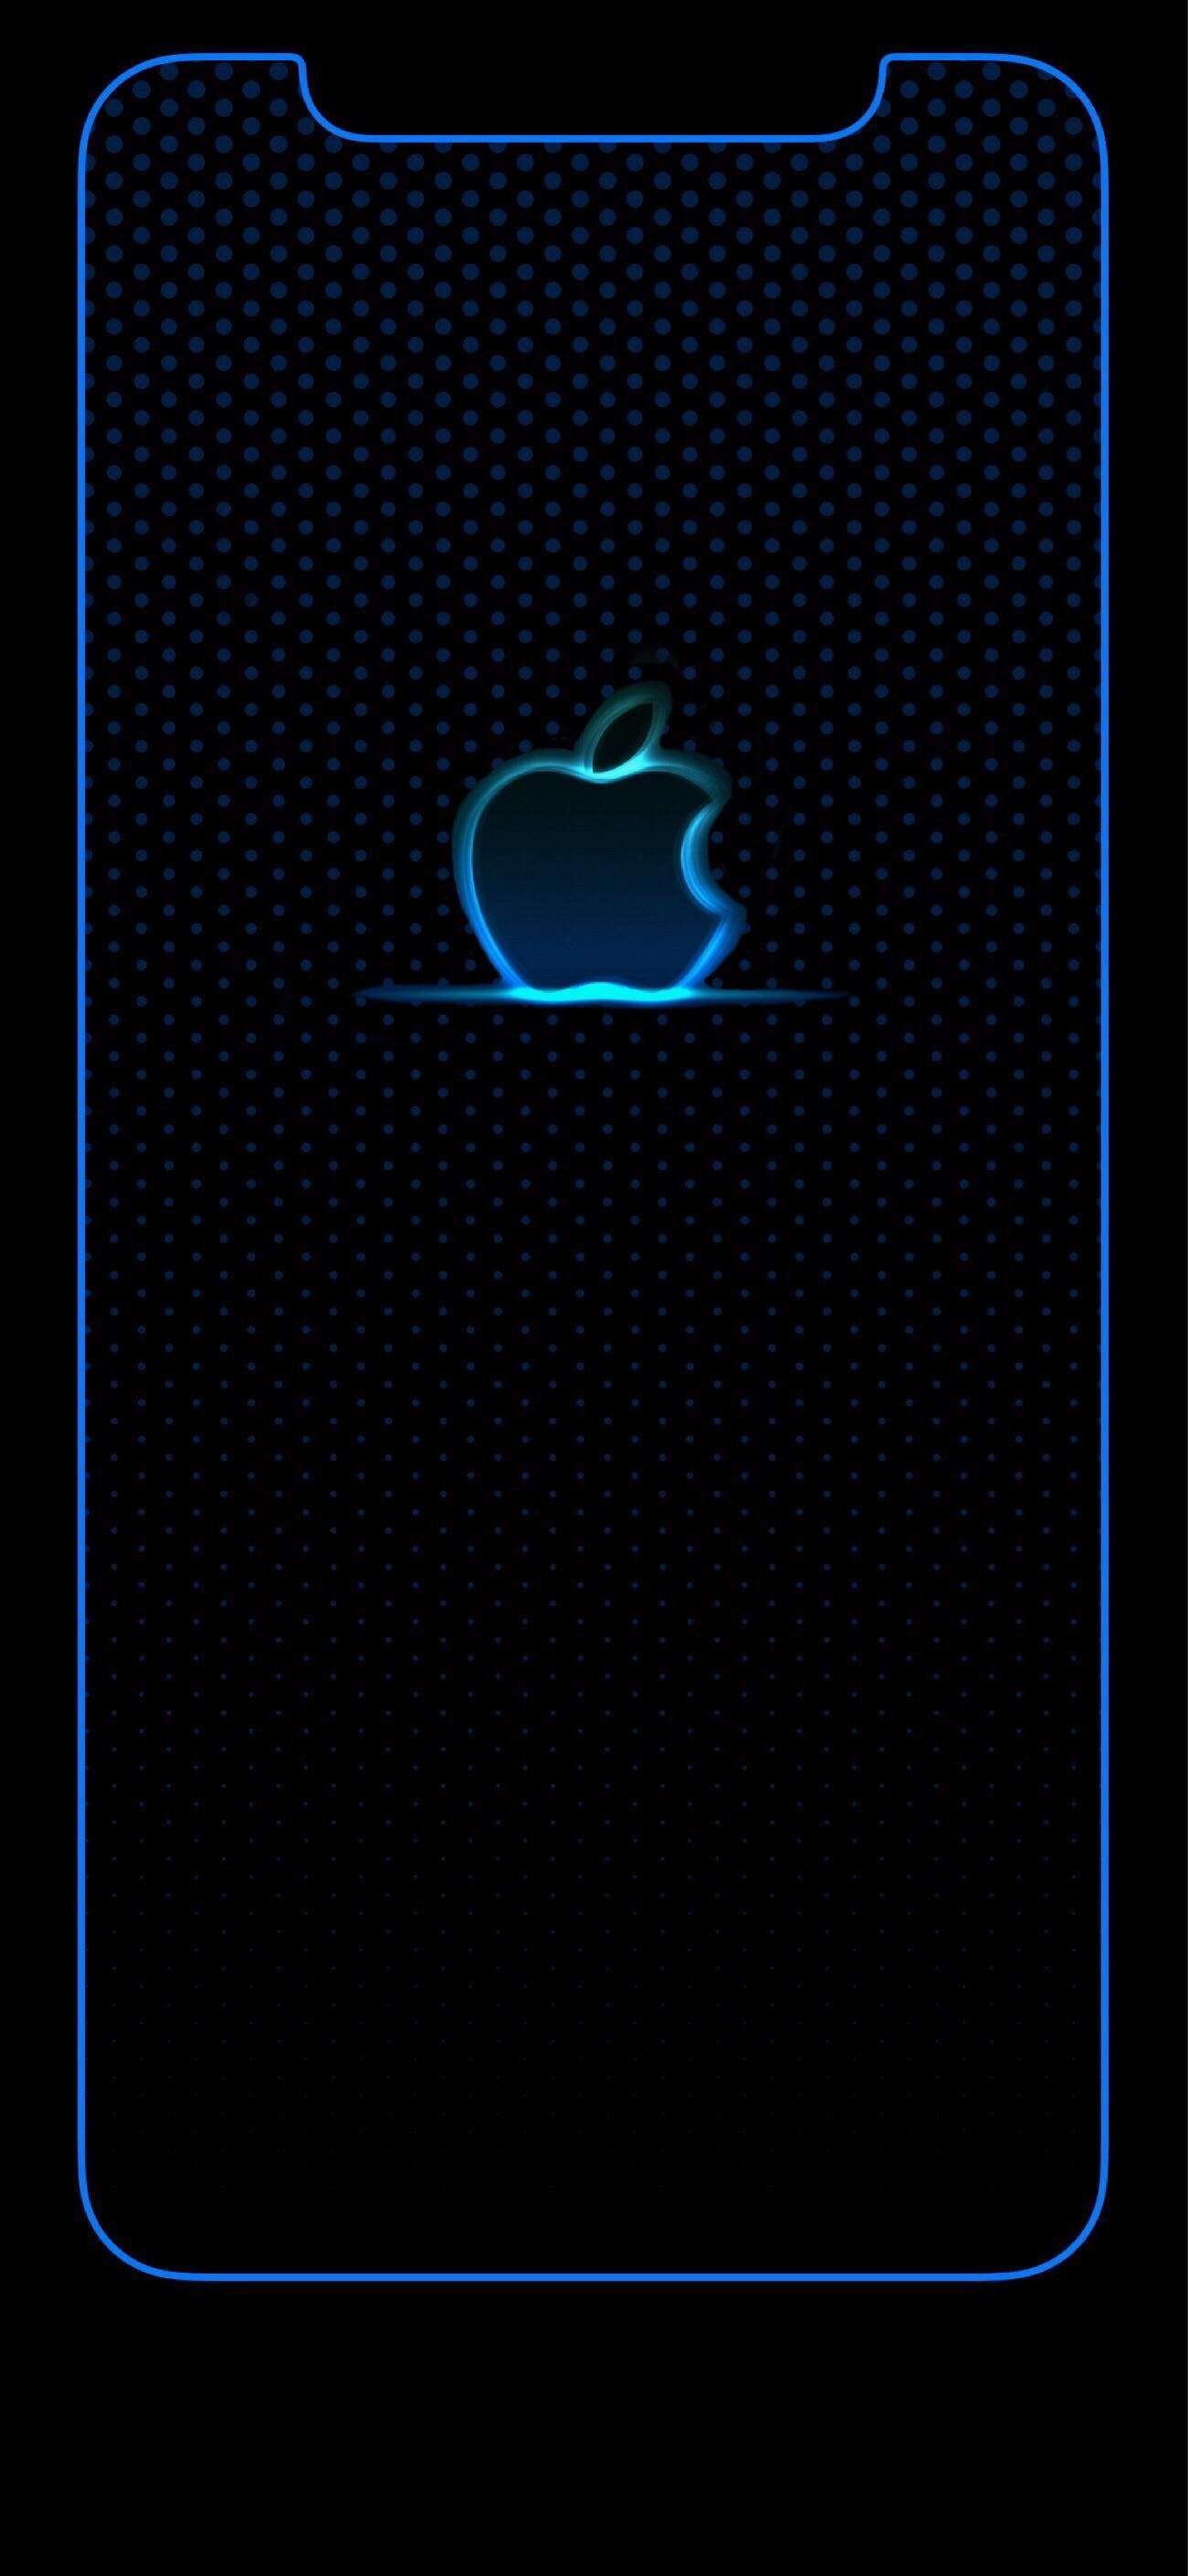 Iphone Apple Wallpapers - Top Những Hình Ảnh Đẹp